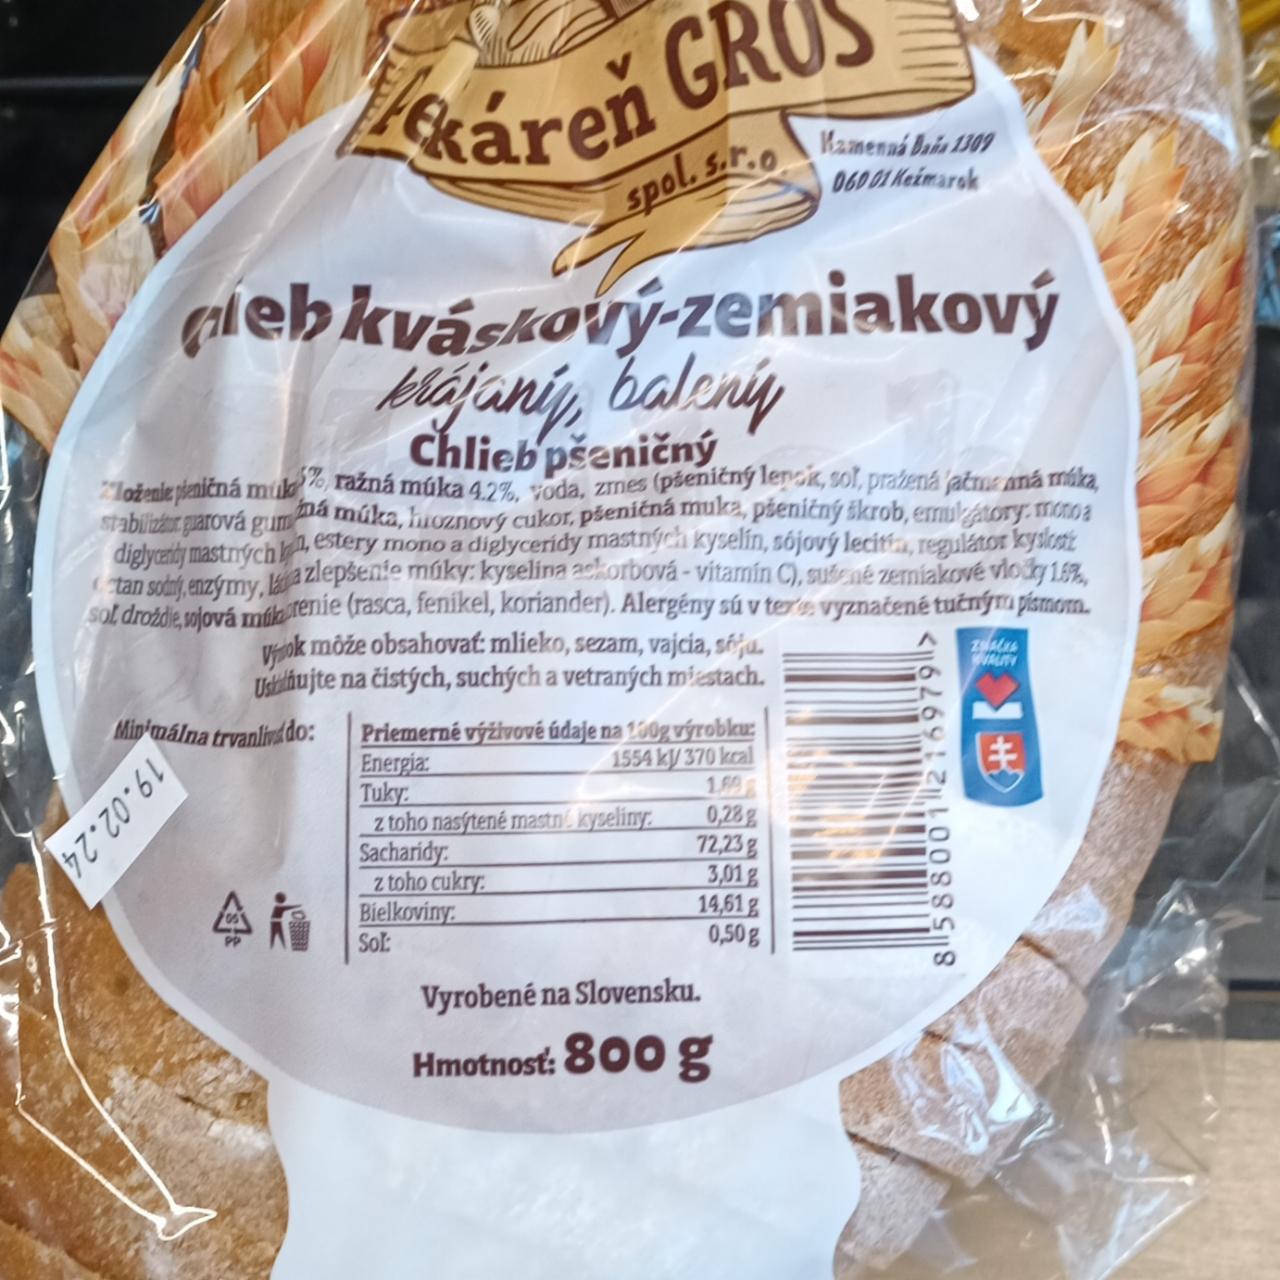 Képek - kovászos burgonyás kenyér Gross